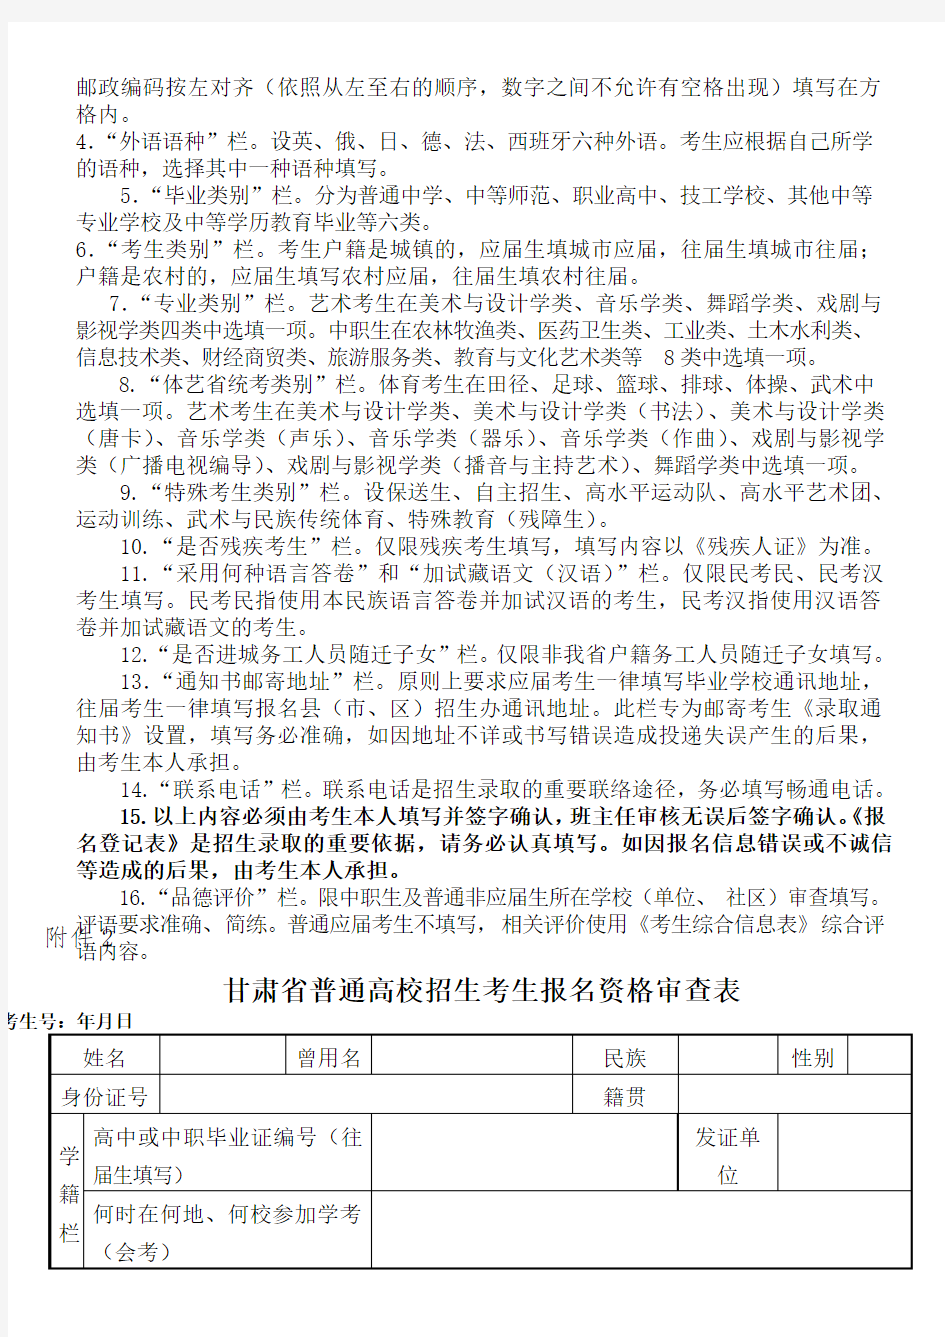 甘肃省普通高校招生考生报名登记表全